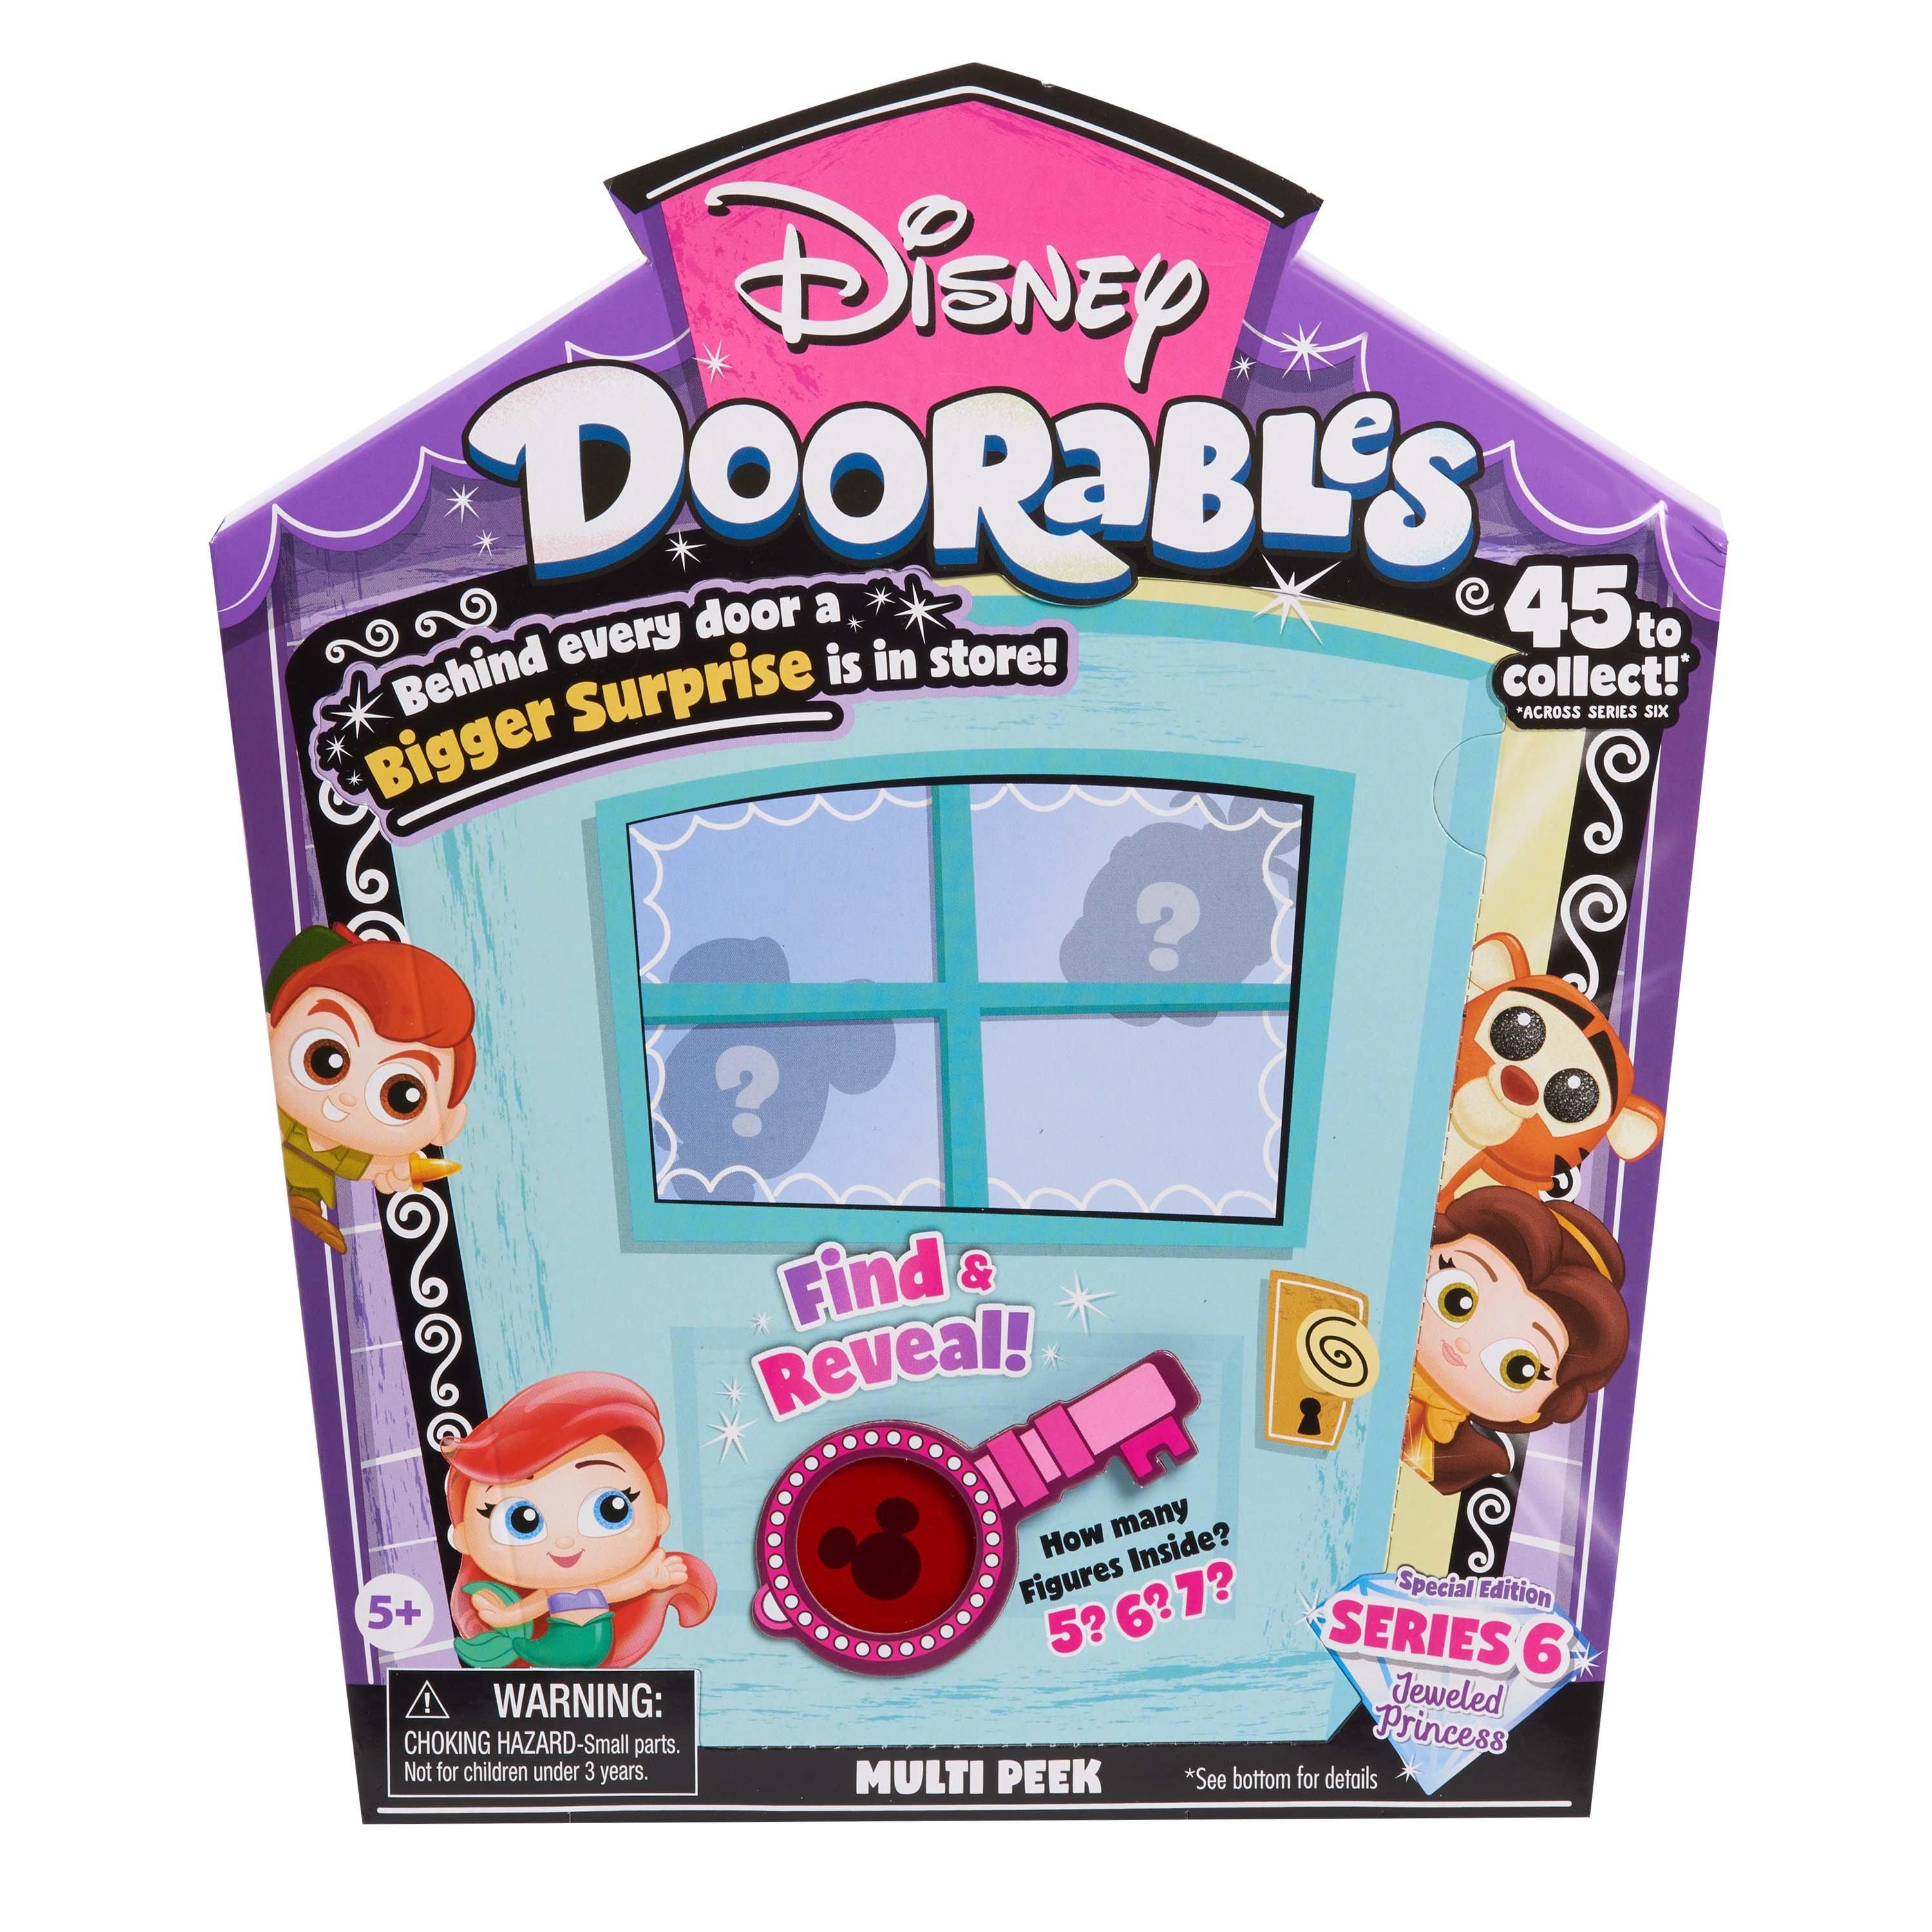 Disney Doorables Multi Peek Series 6 Blind Box GameStop